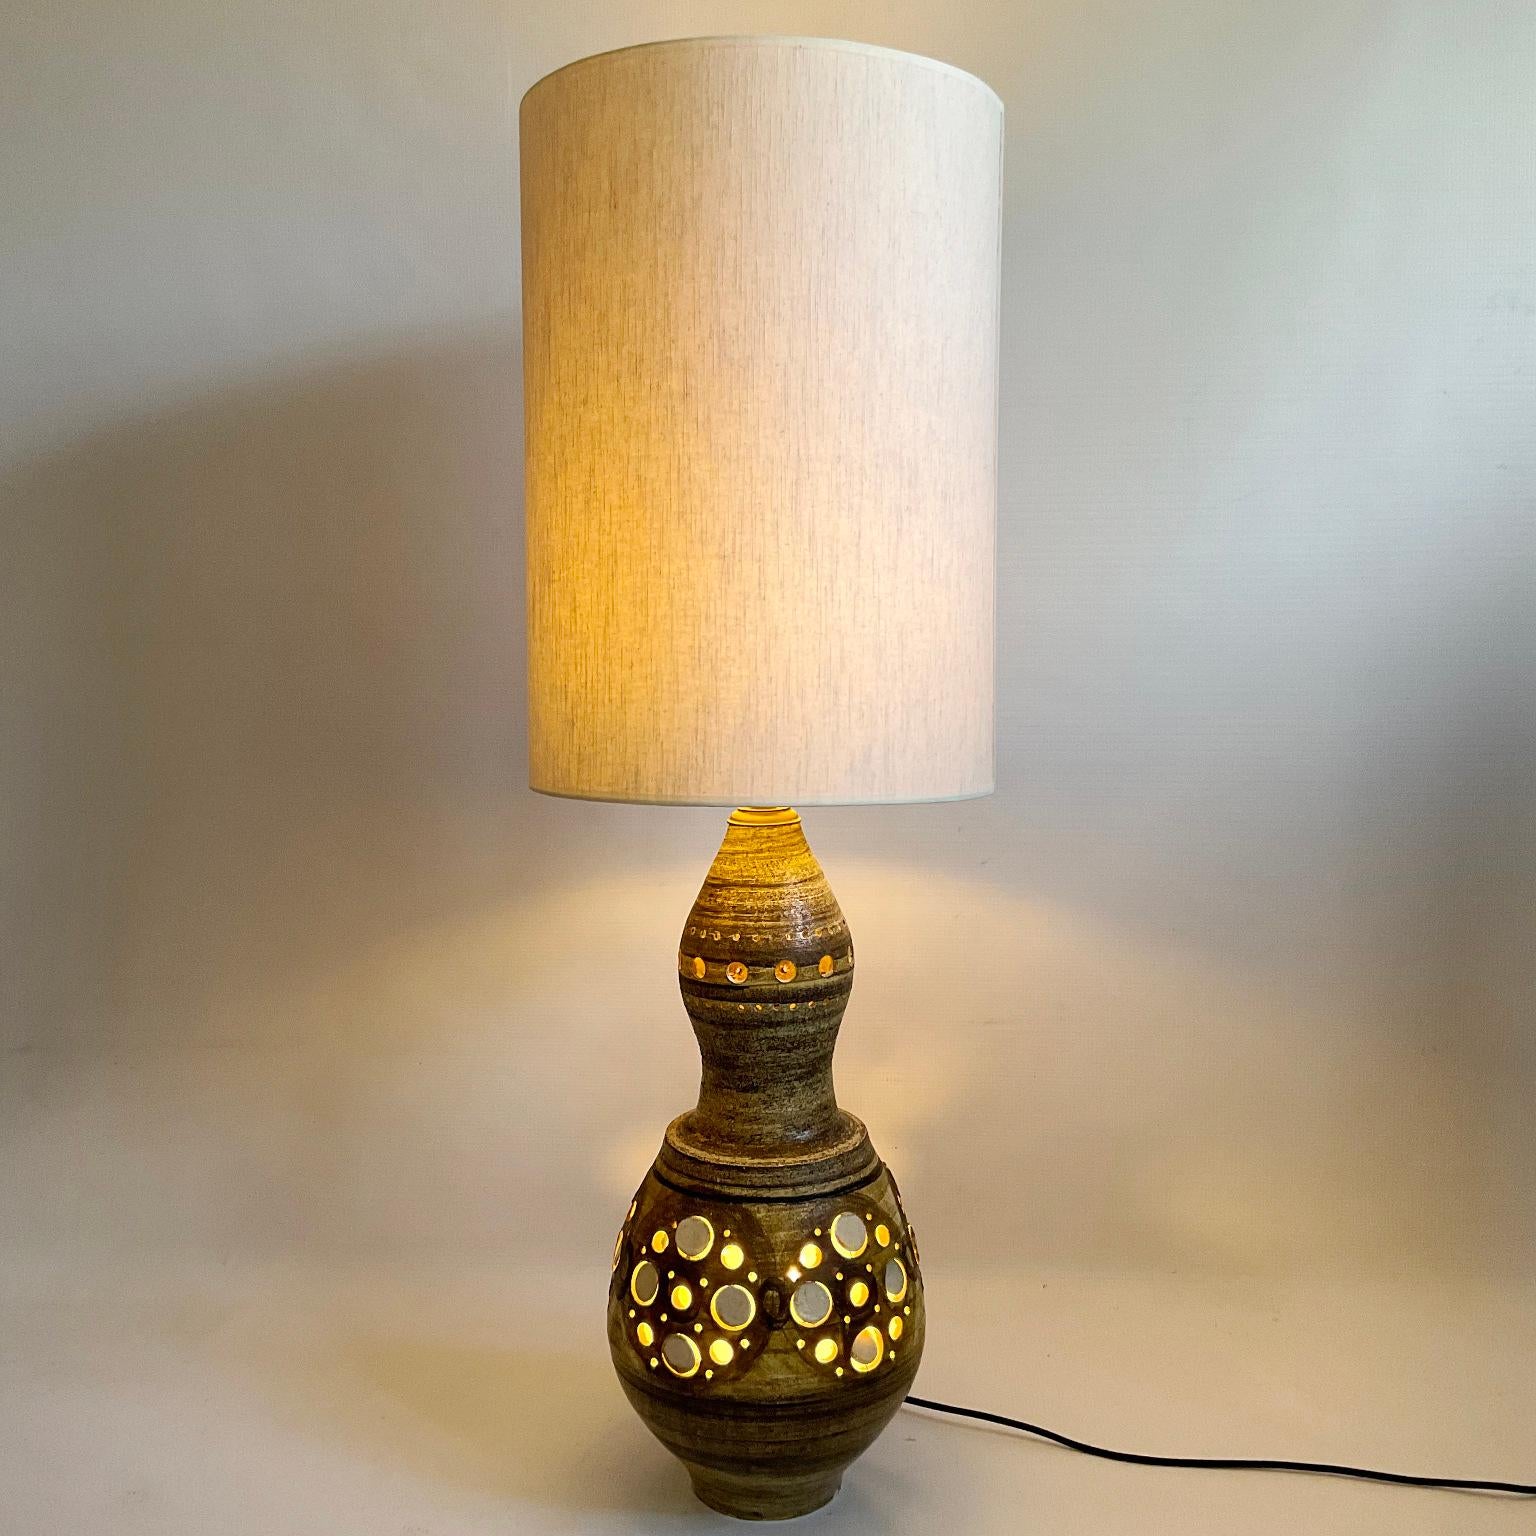 Cette grande lampe de table ou lampadaire des années 1960 est un bel exemple d'artisanat. Elle a été fabriquée en argile et peinte à la main par l'artiste Georges Pelletier, un céramiste français bien connu des collectionneurs.
Cette lampe possède